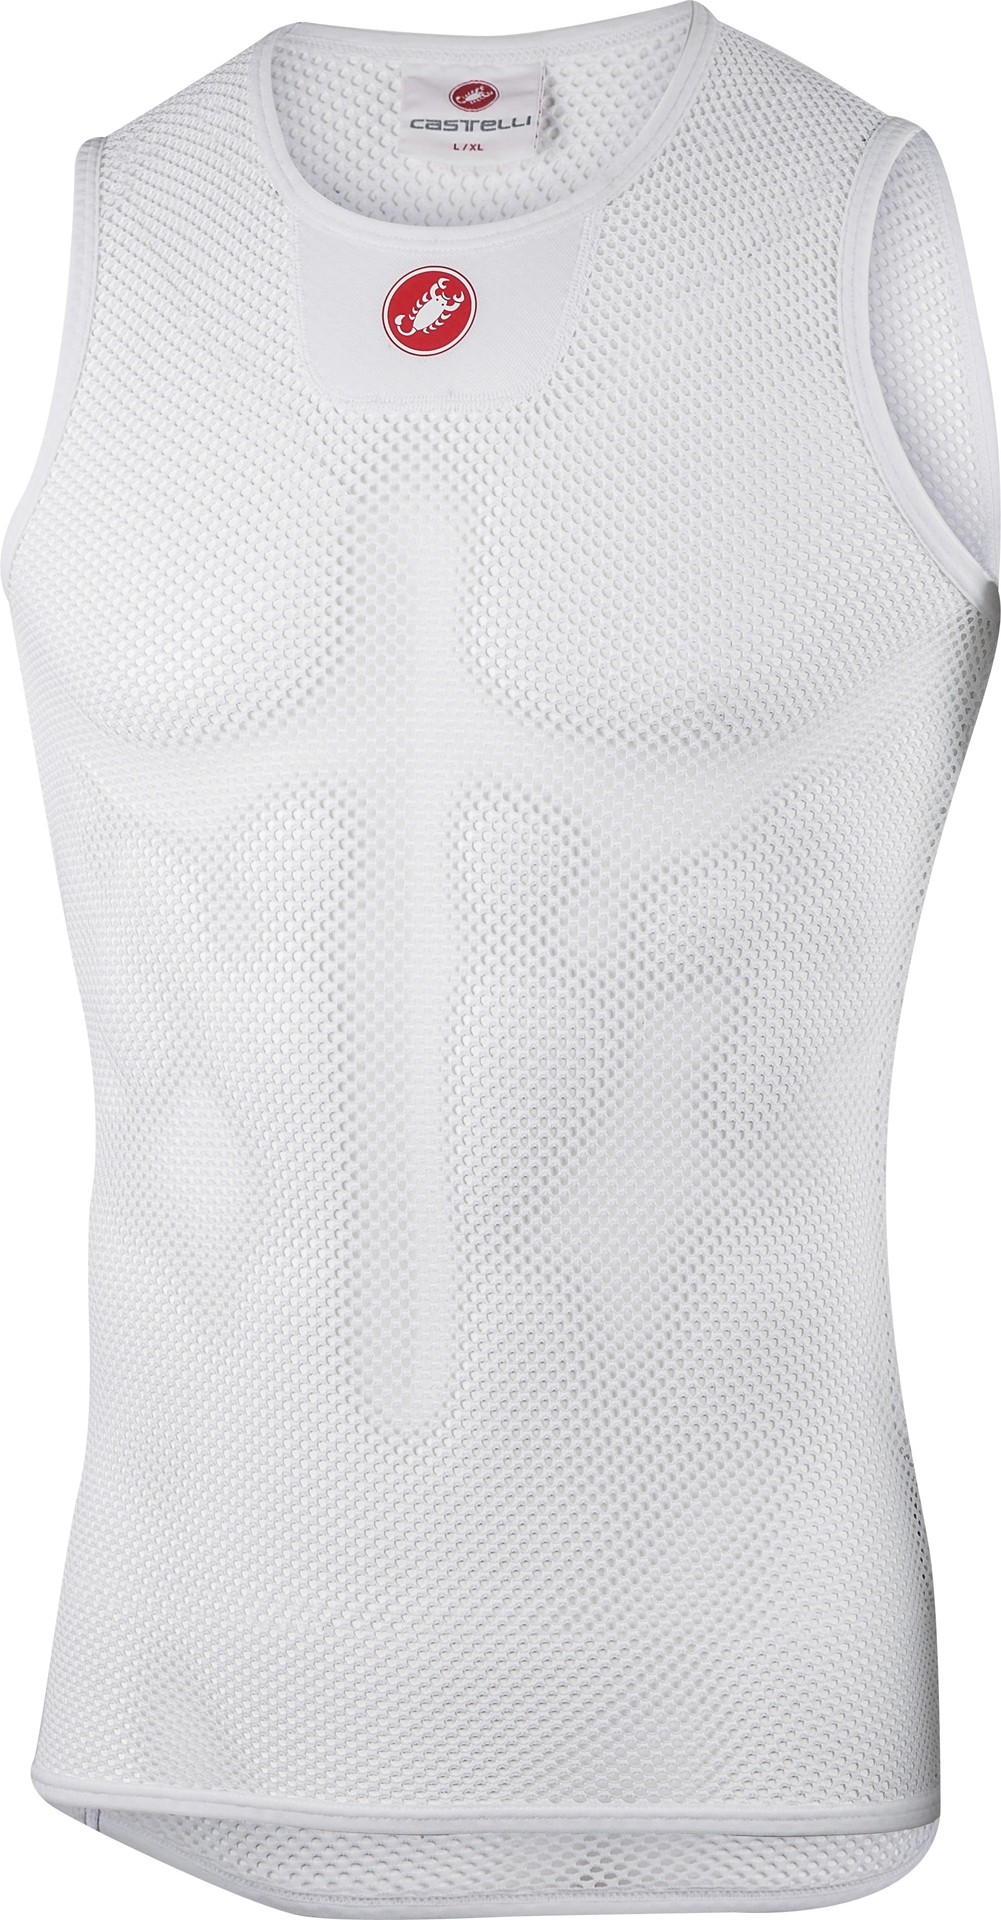 Castelli core mesh 3 Unterhemd ohne Ärmel weiß